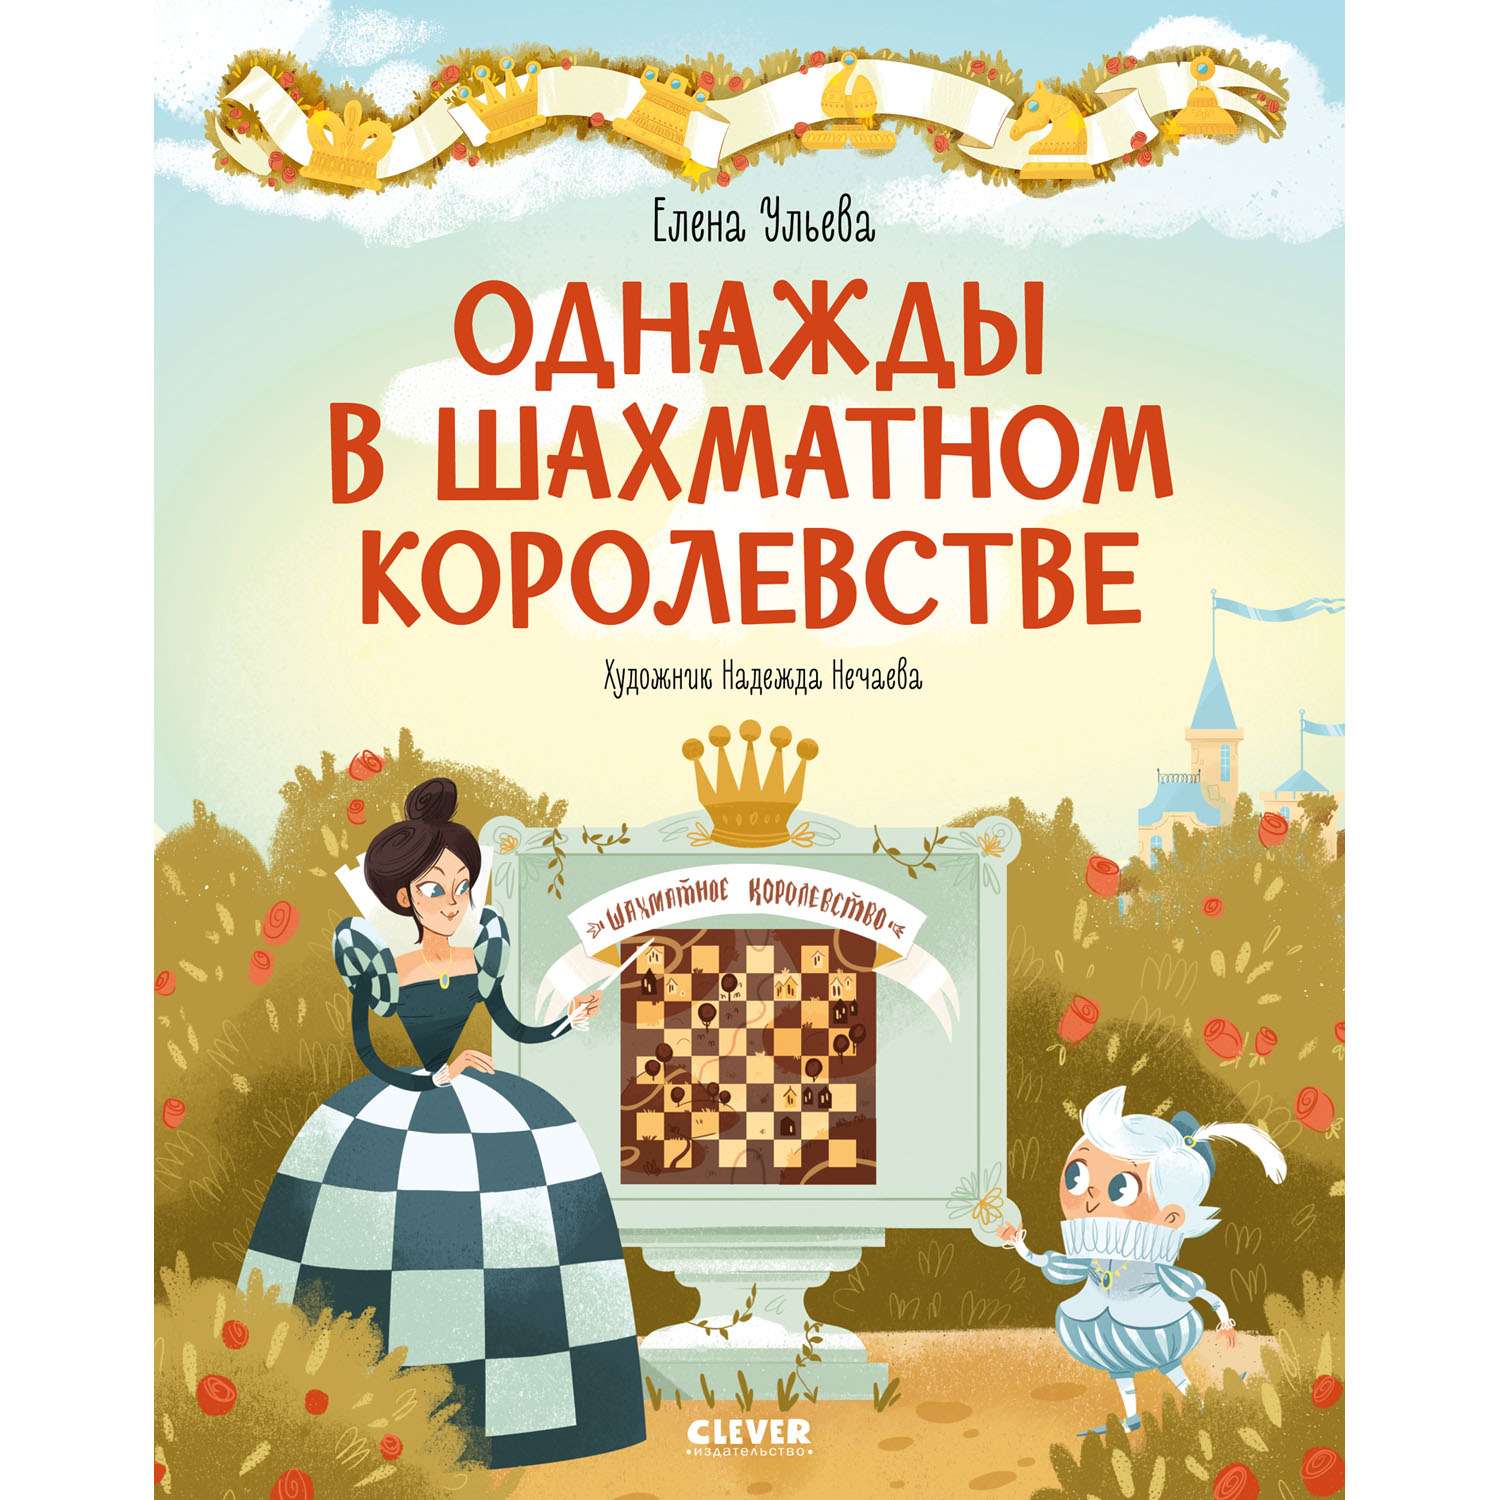 Книга Clever Издательство Однажды в шахматном королевстве - фото 1